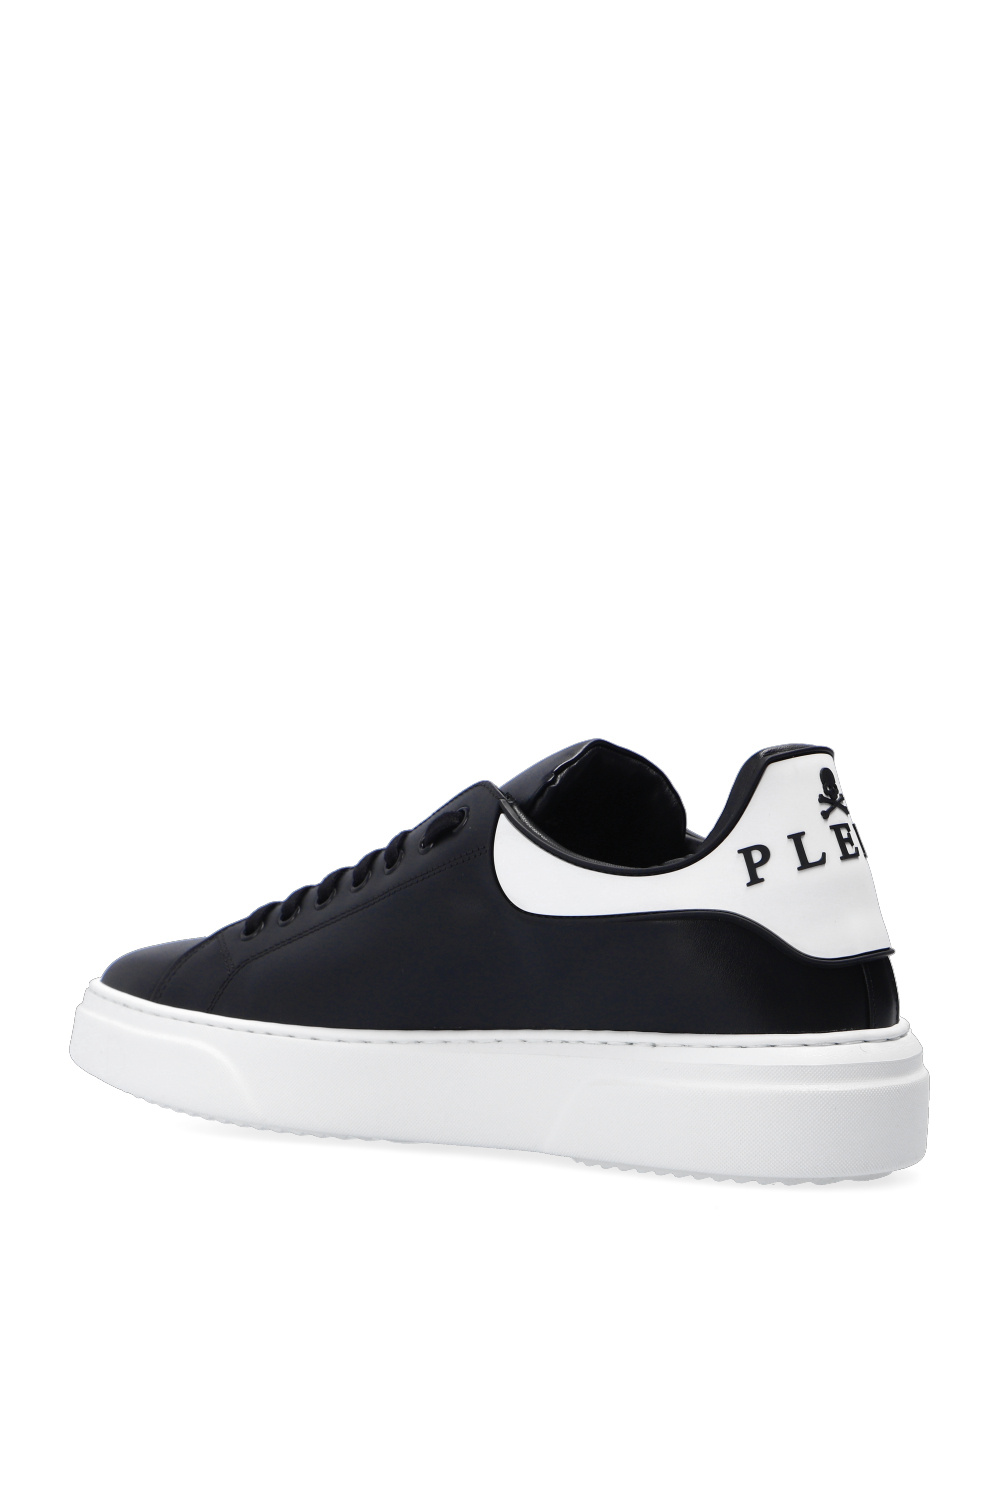 Philipp Plein Embossed sneakers